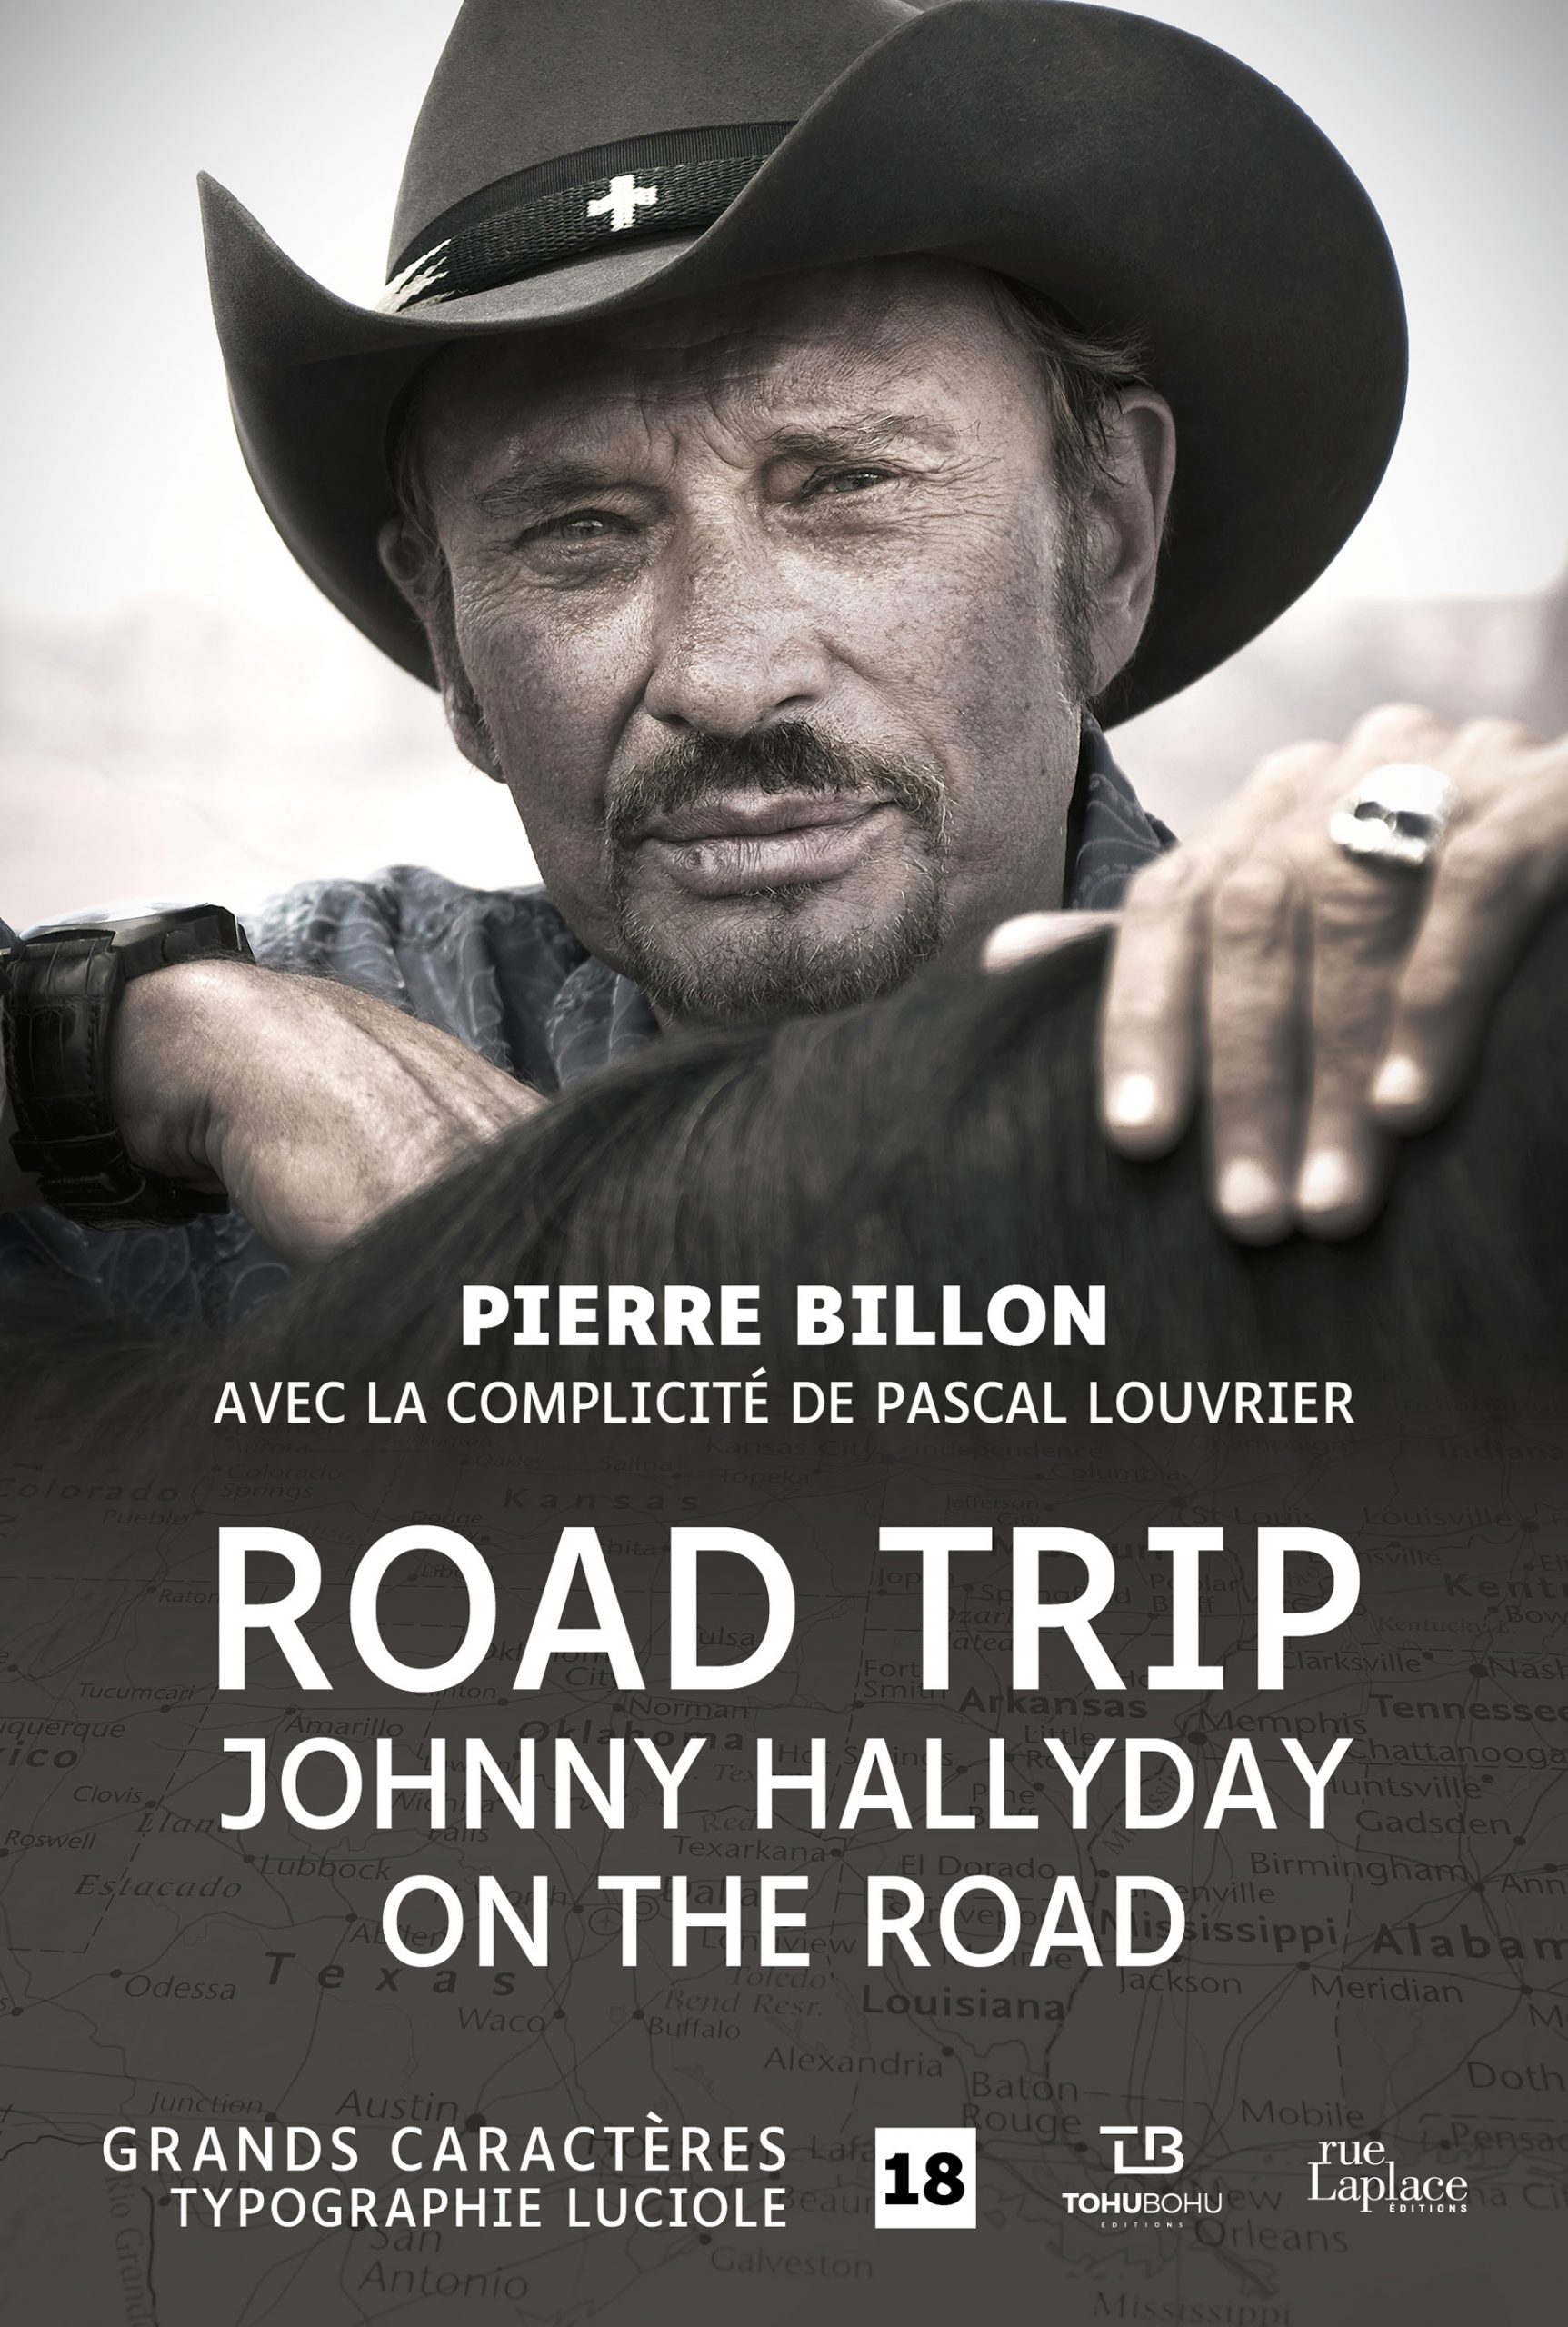 Couverture de Road Trip, Johnny Hallyday on the road de Pierre Billon